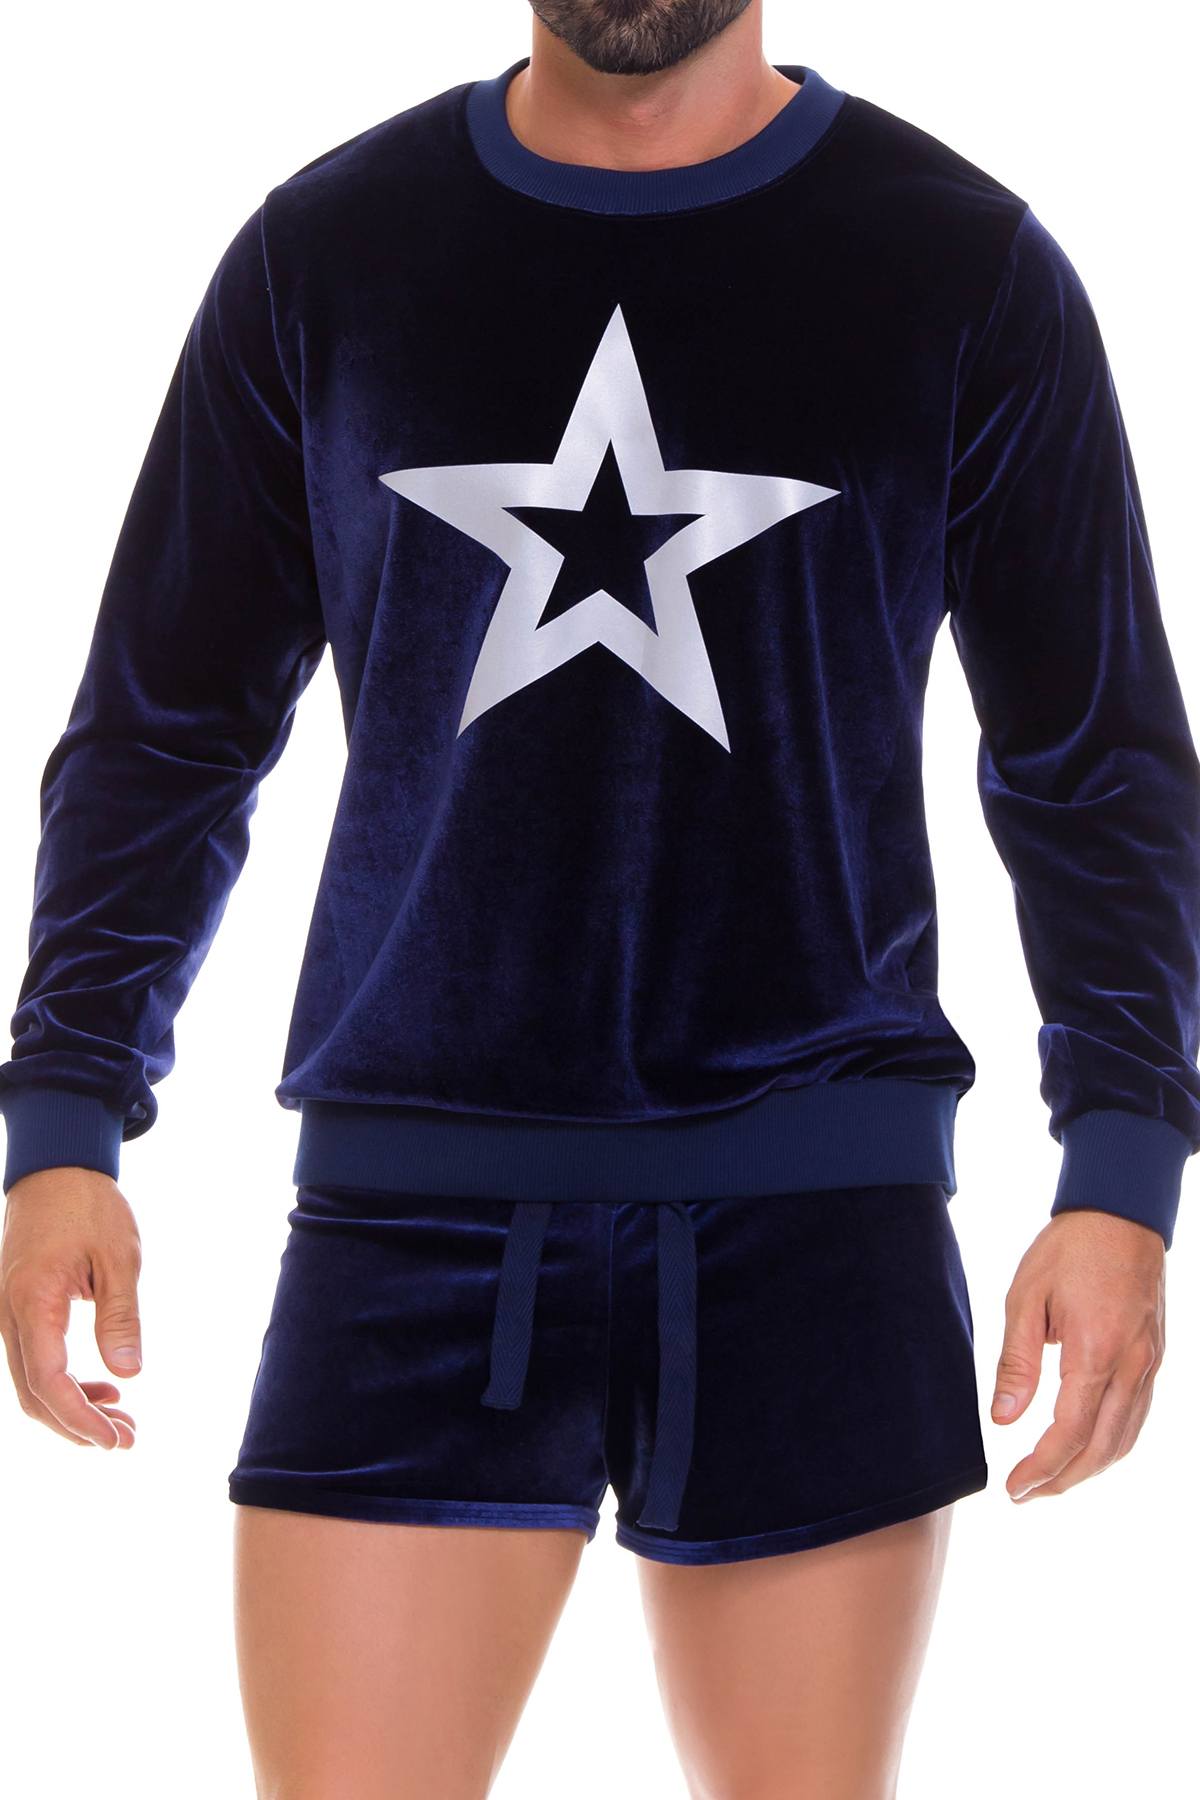 Jor Blue Star Sweater